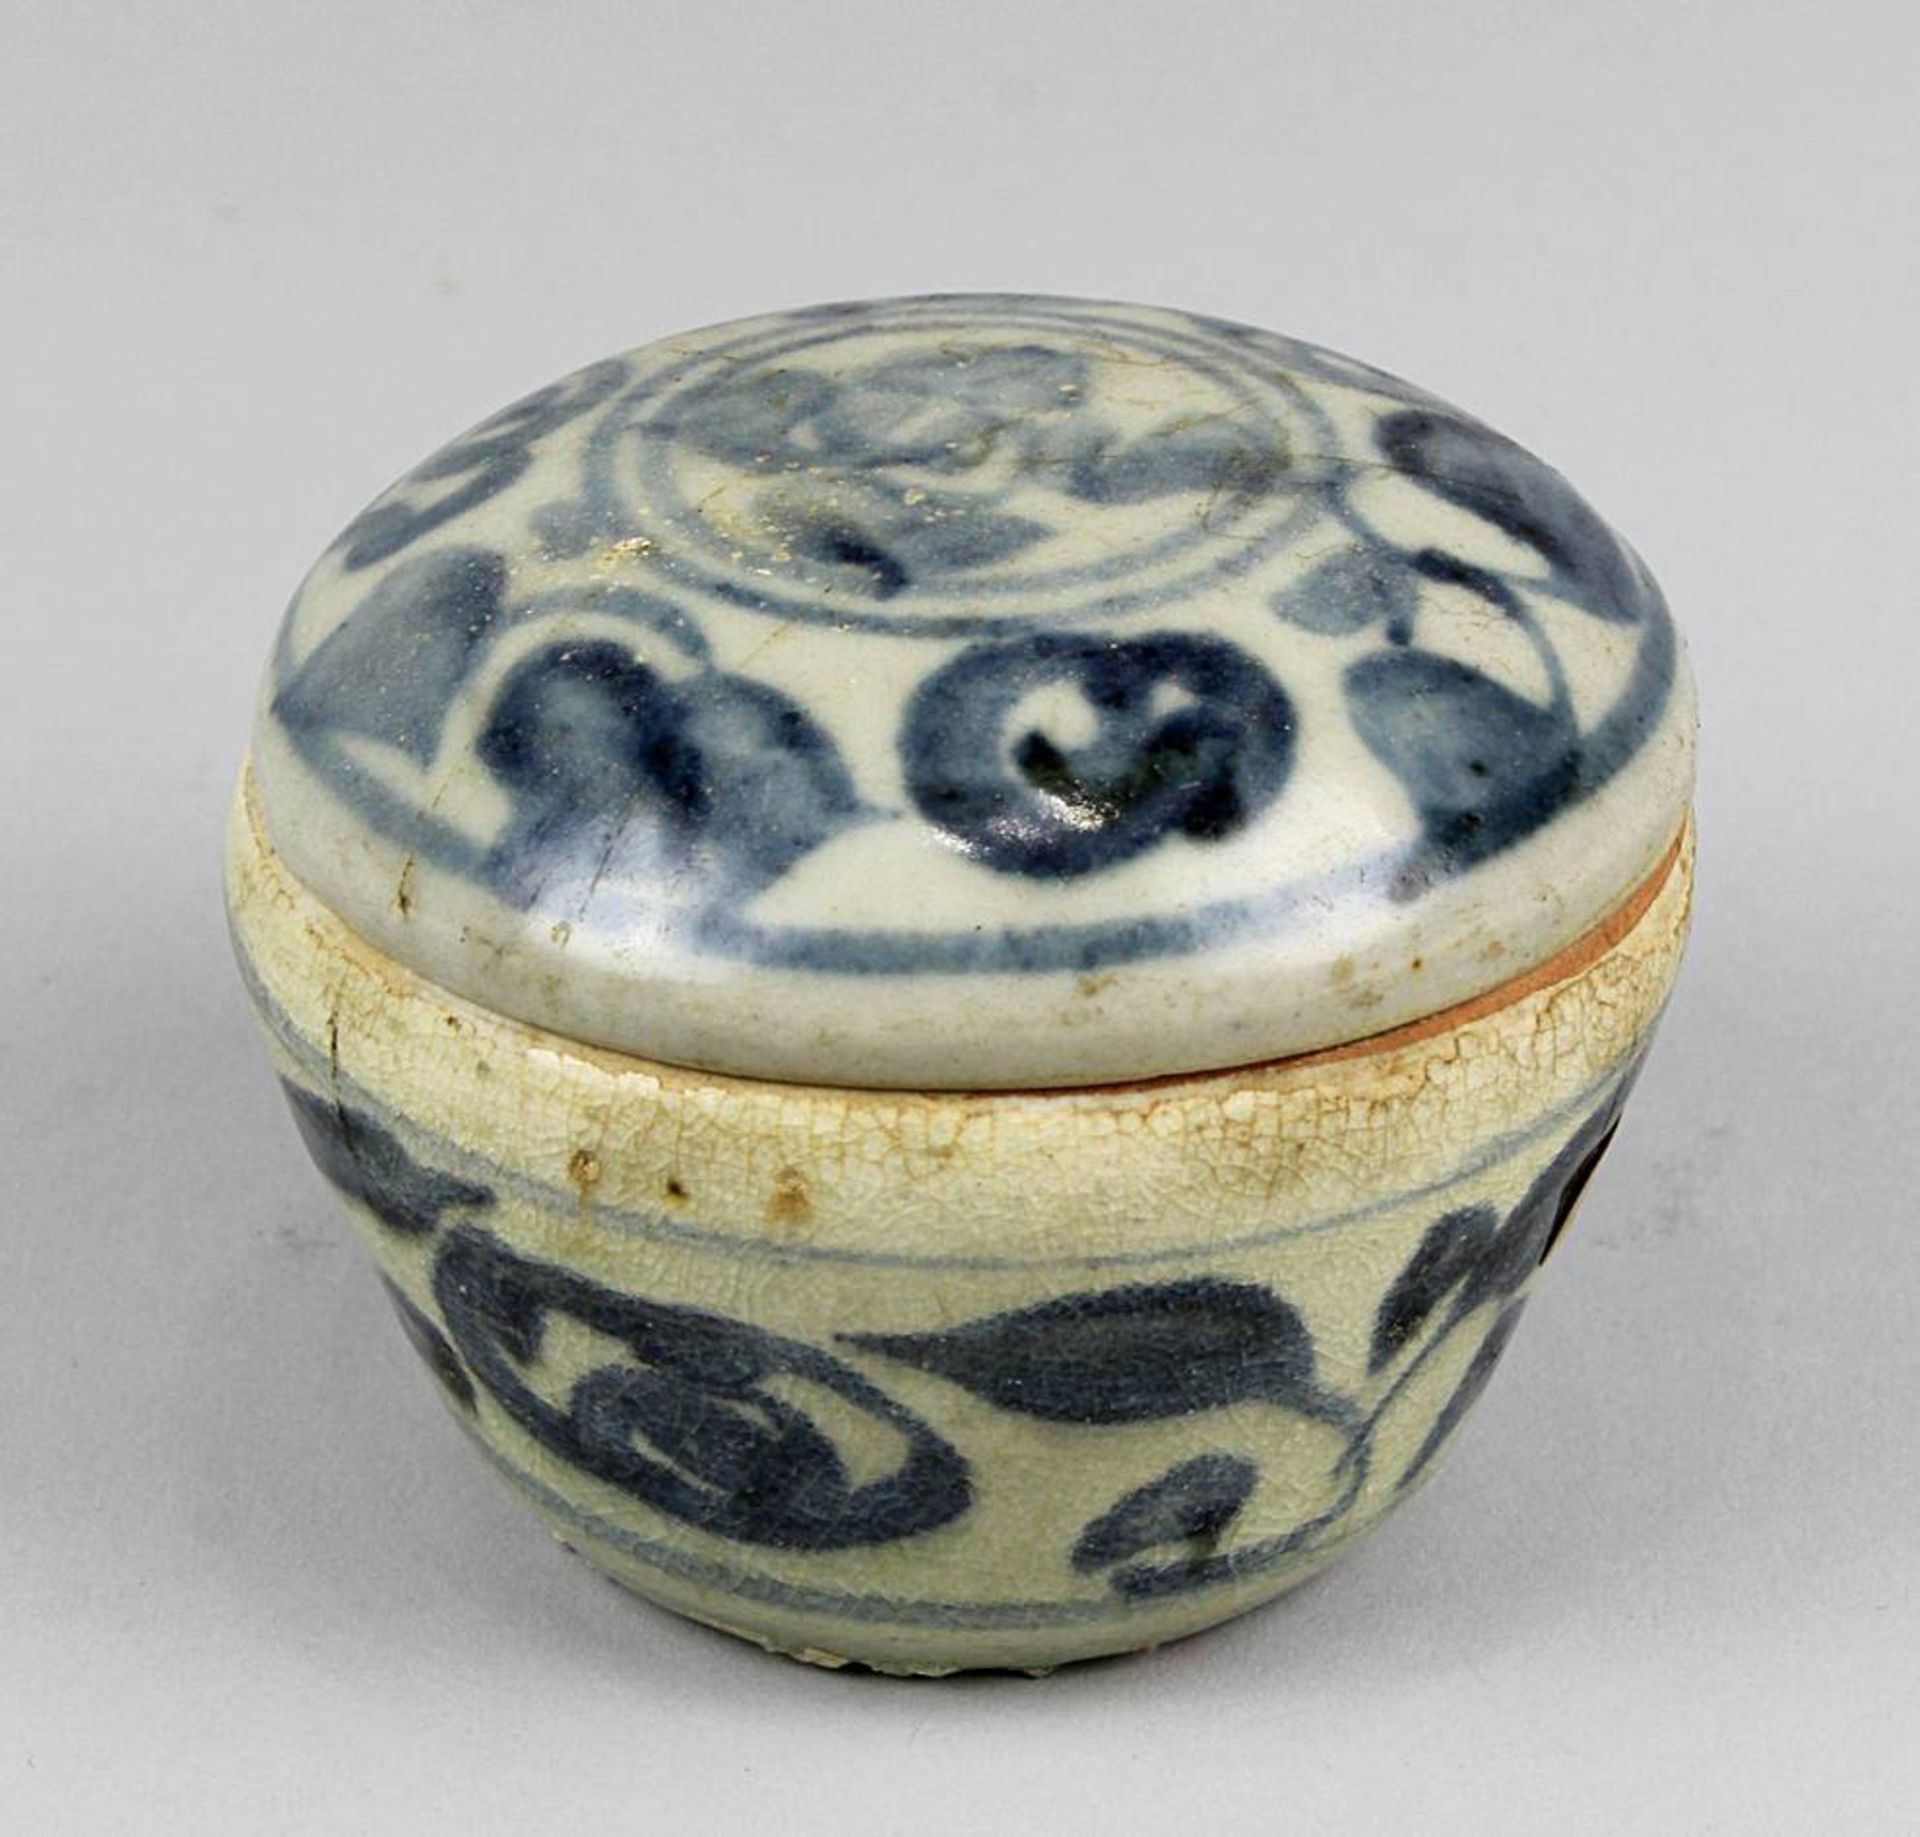 Deckeldose wohl Thailand oder Laos18.Jh. Keramik, hellblau glasiert und blau bemalt. Durchmesser 8,